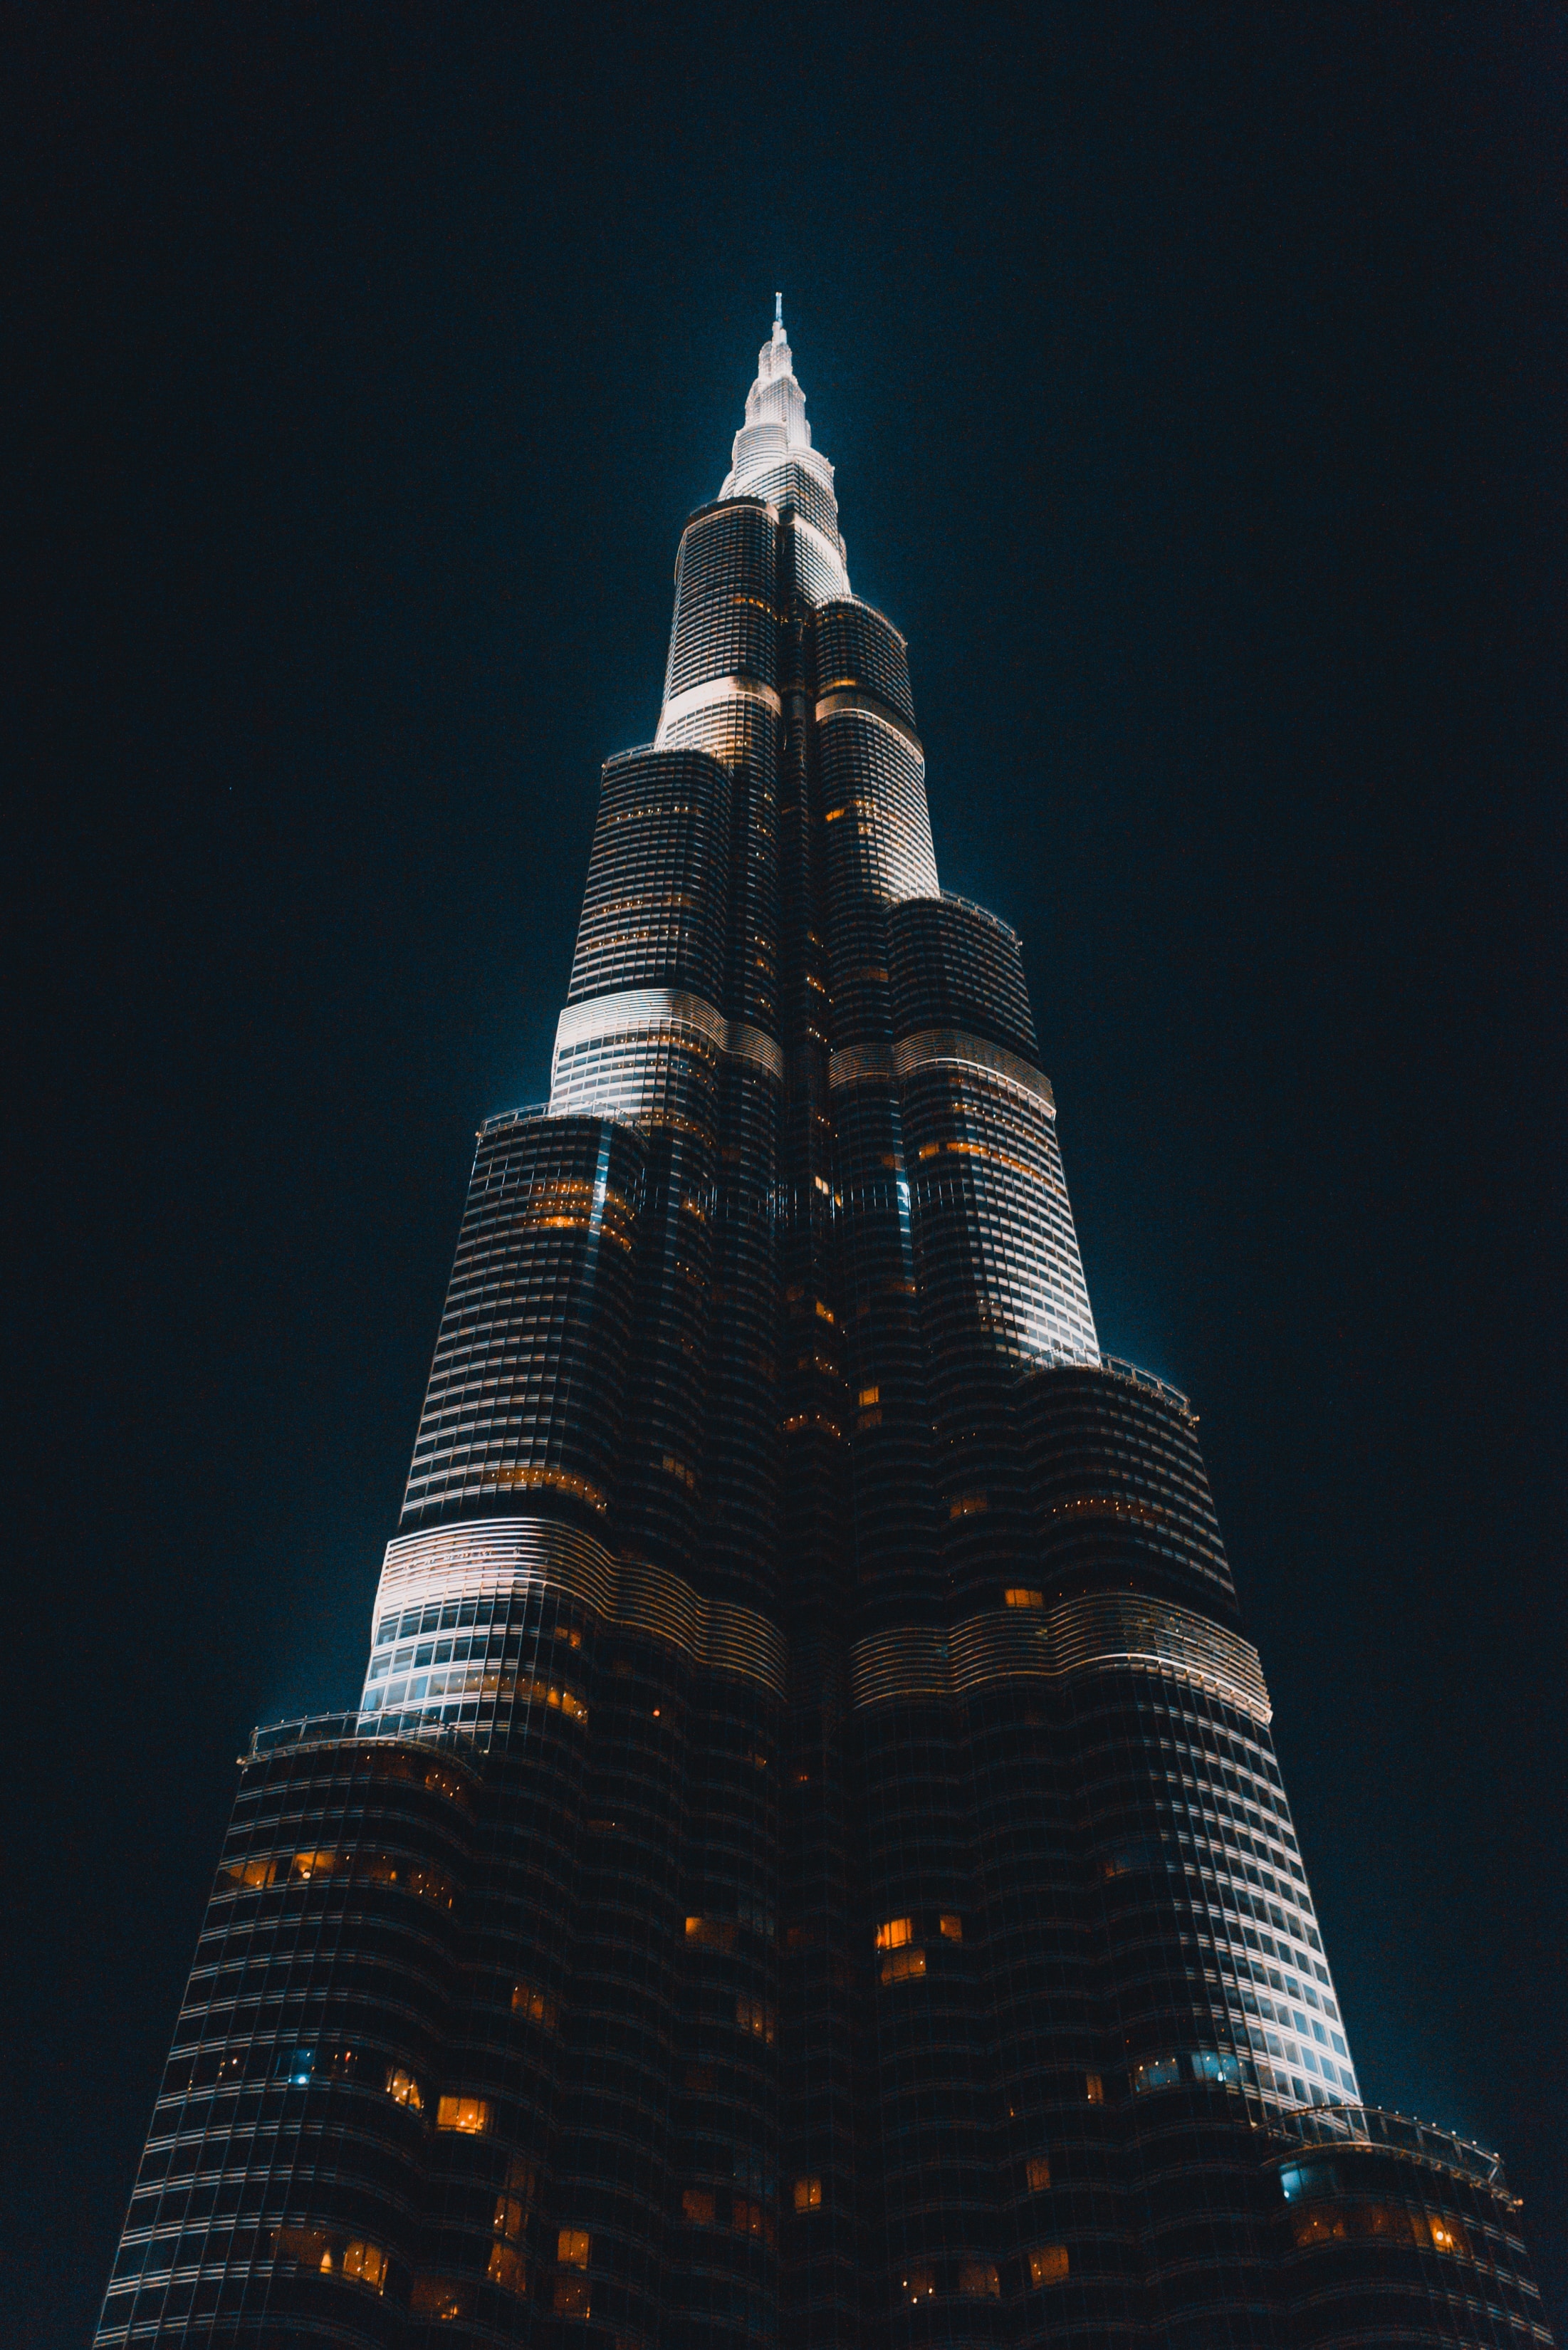 Dubai Burj Khalifa - night